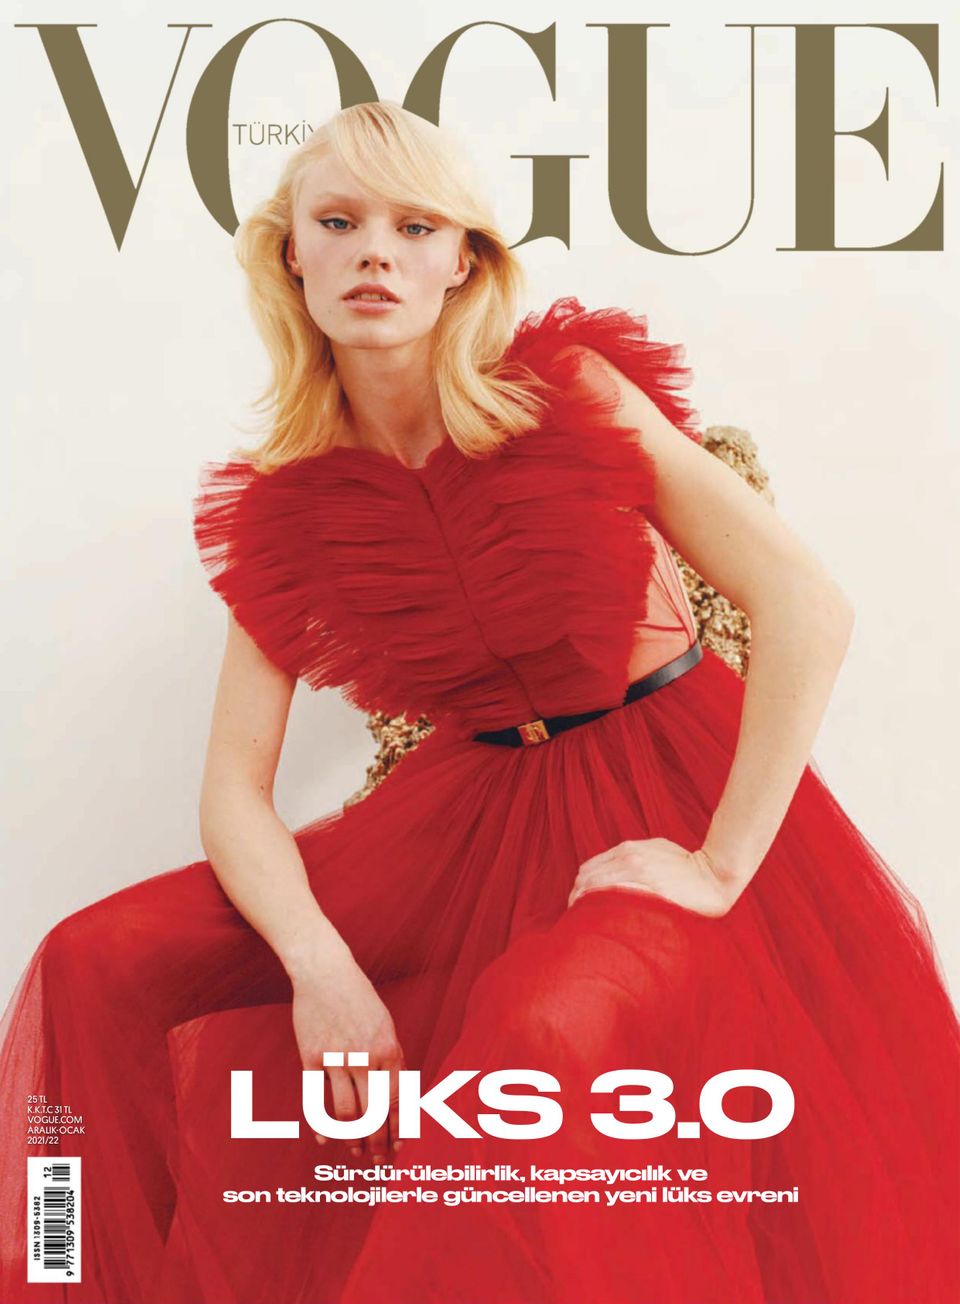 Vogue TÜRKİYE December 2021/January 2022